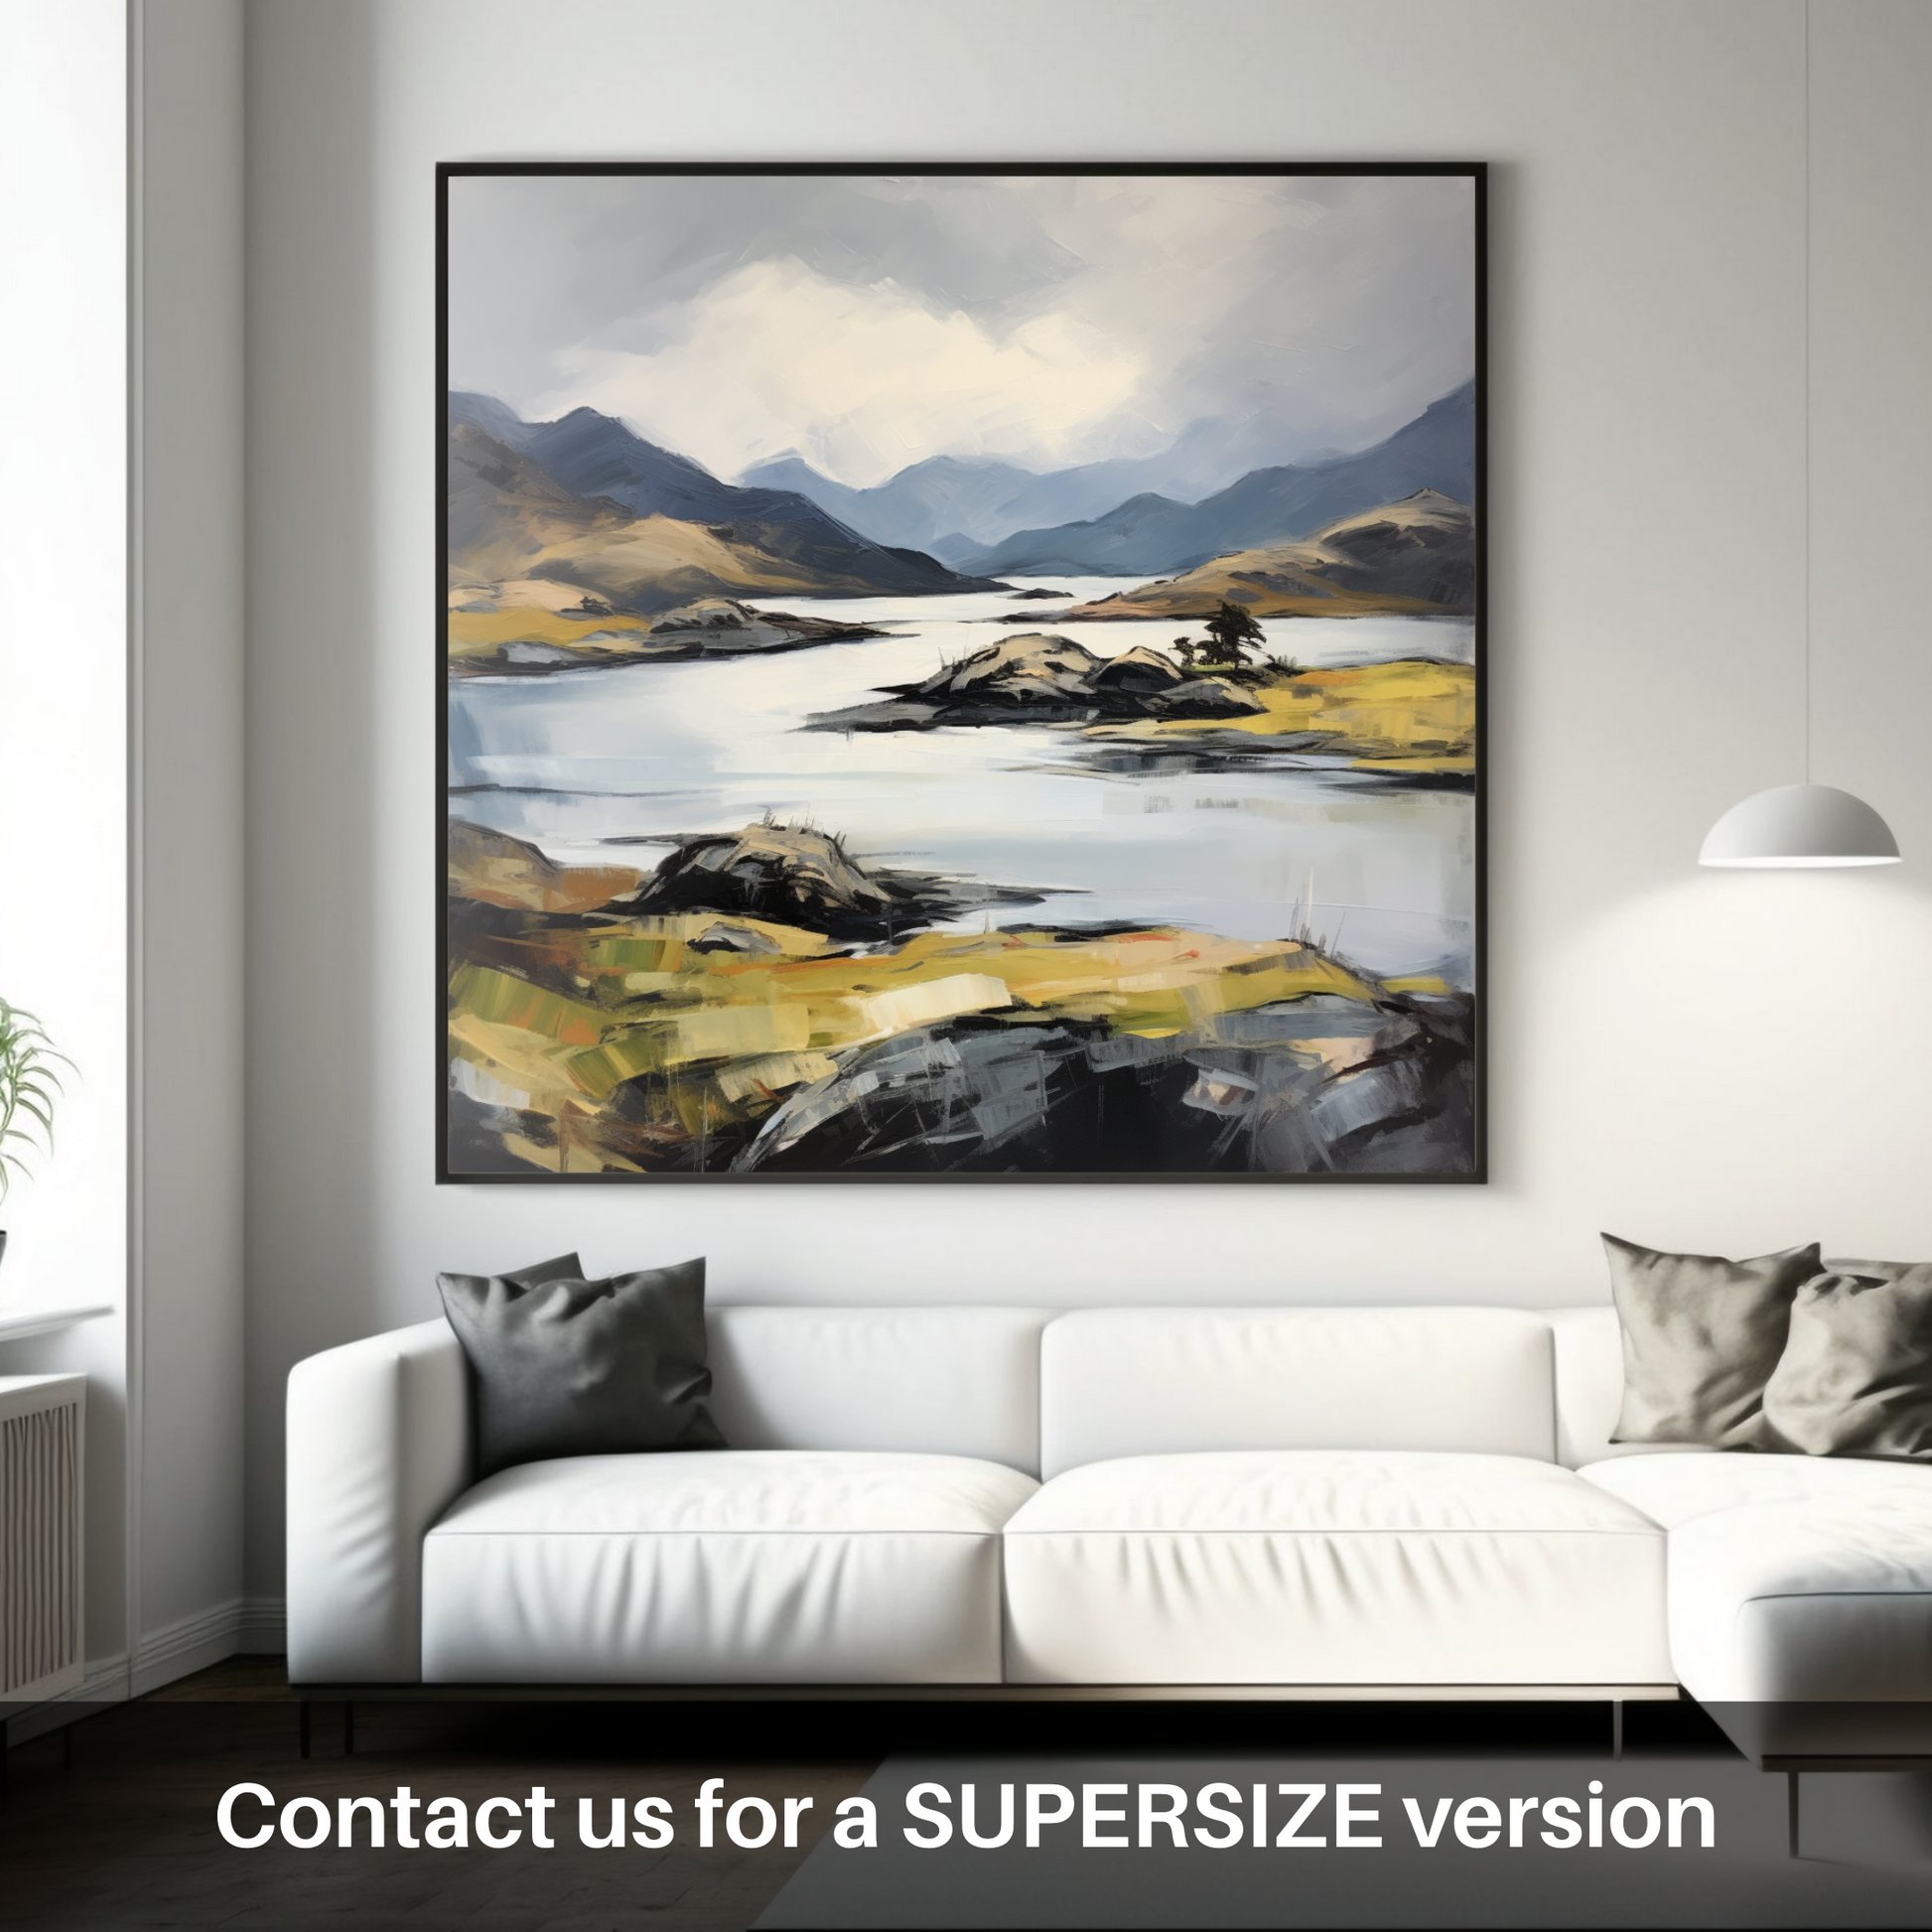 Huge supersize print of Loch Morar, Highlands